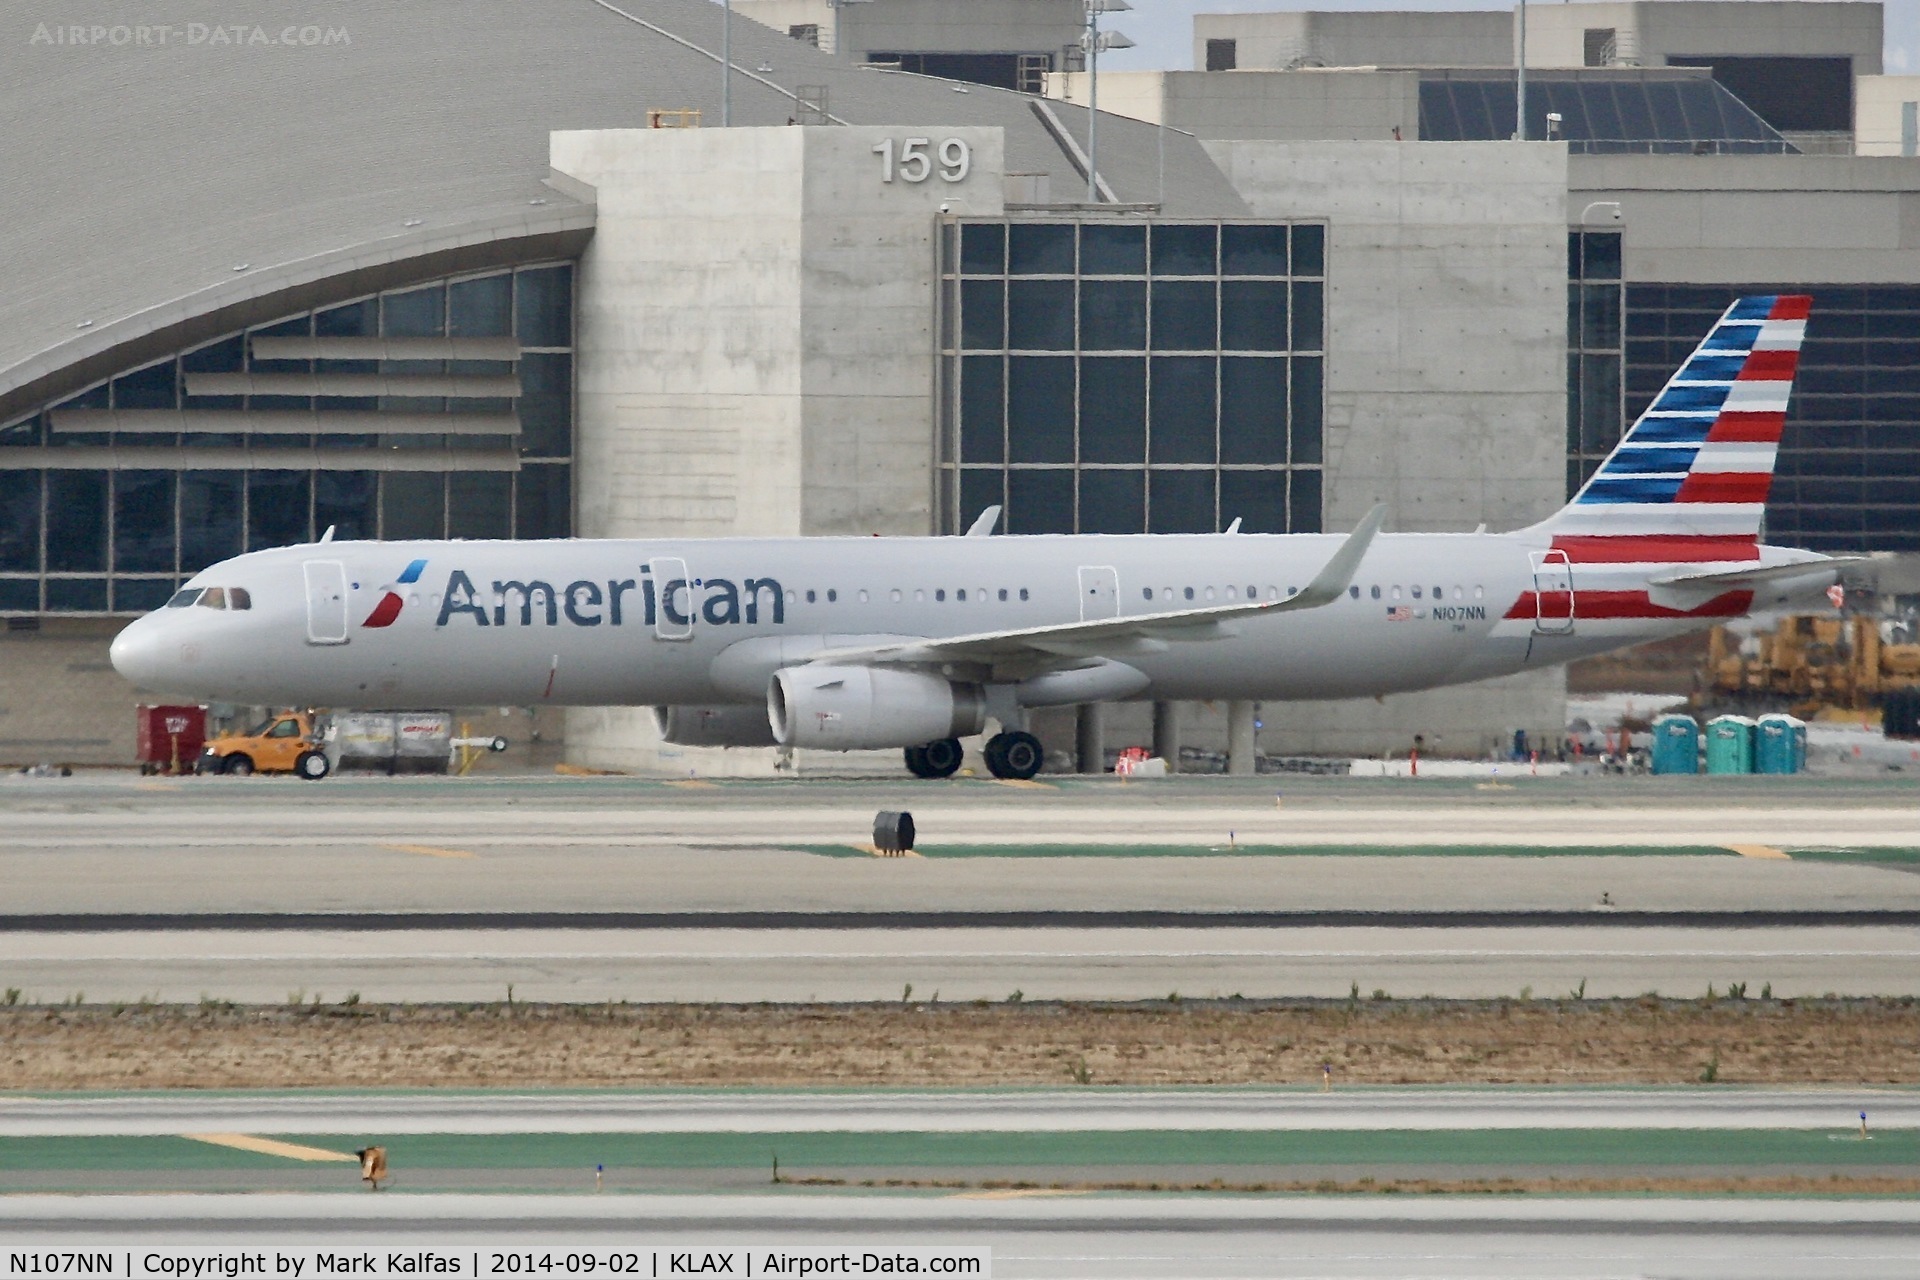 N107NN, 2013 Airbus A321-231 C/N 5938, American,  Airbus A321-231, N107NN at LAX